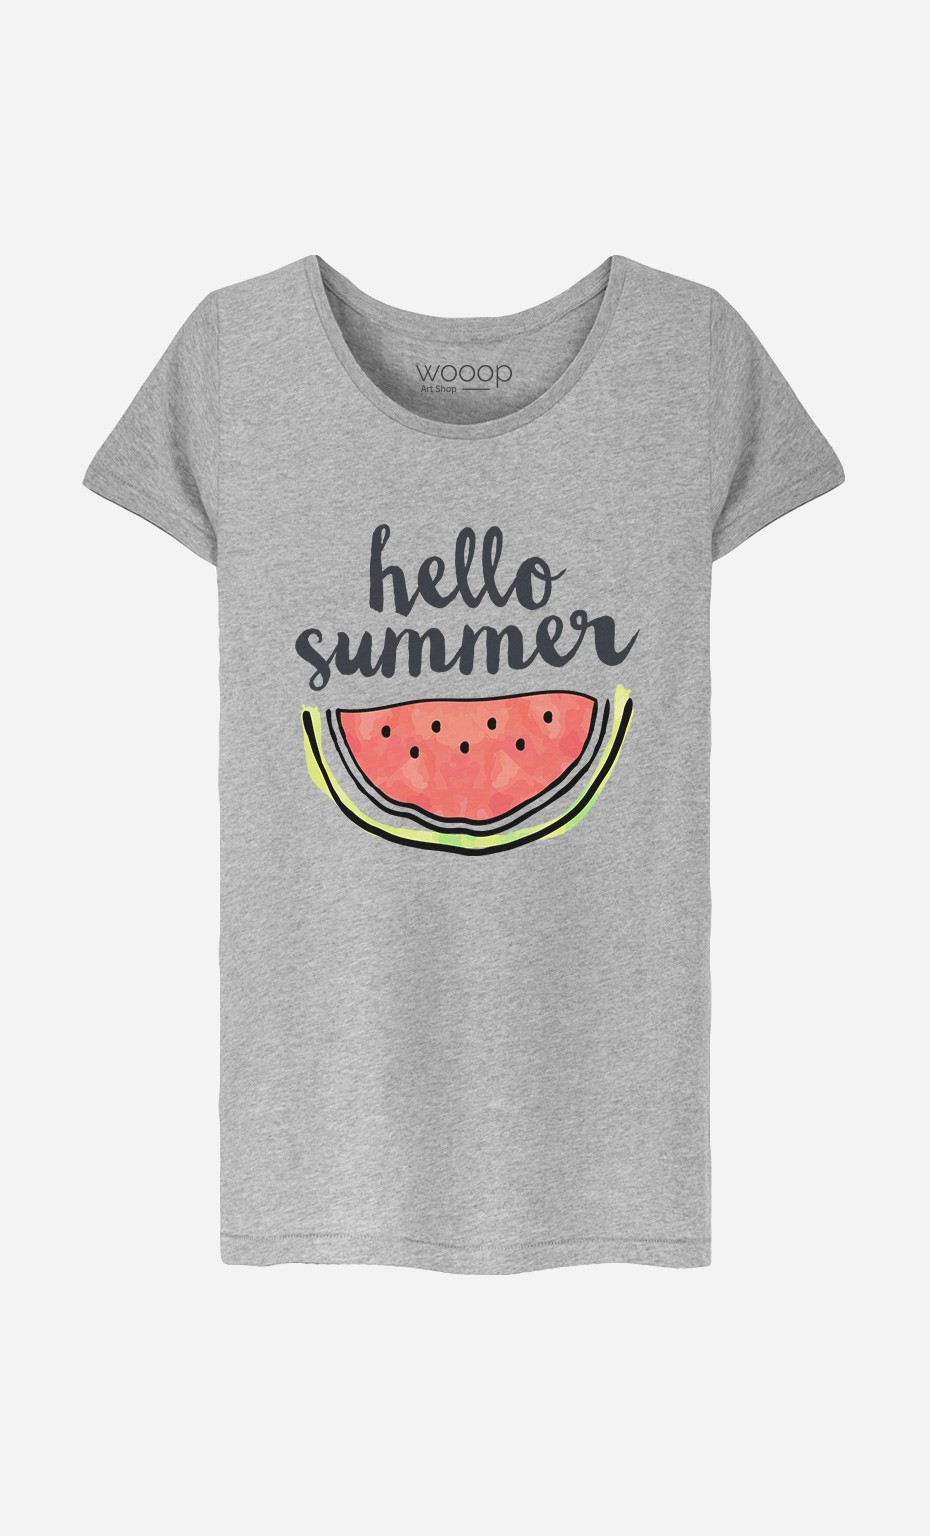 T-Shirt Femme Hello Summer